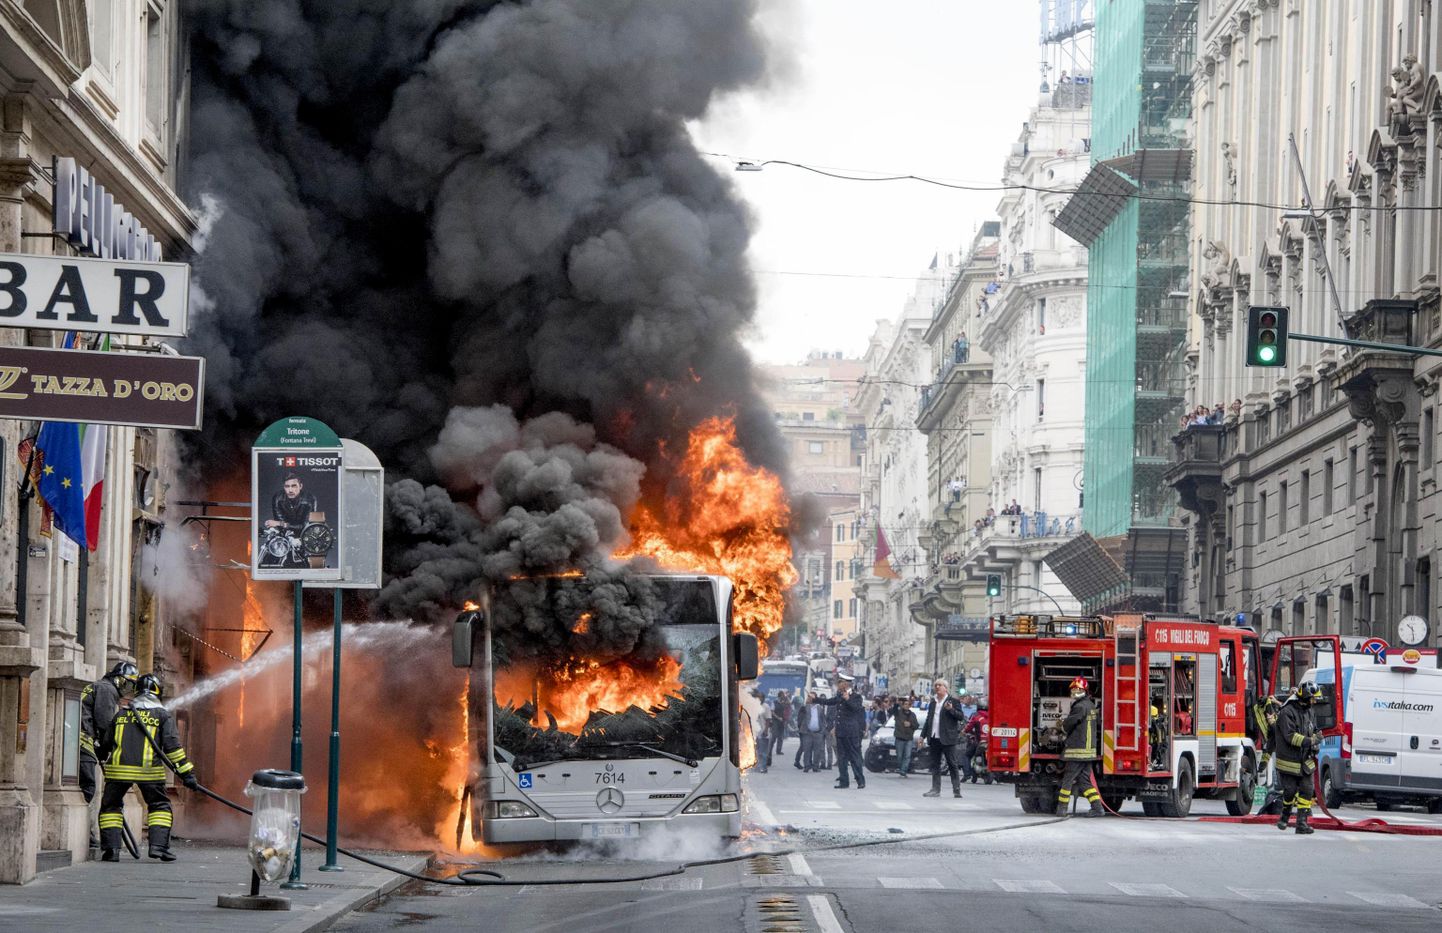 Roomas põlema süttinud buss.